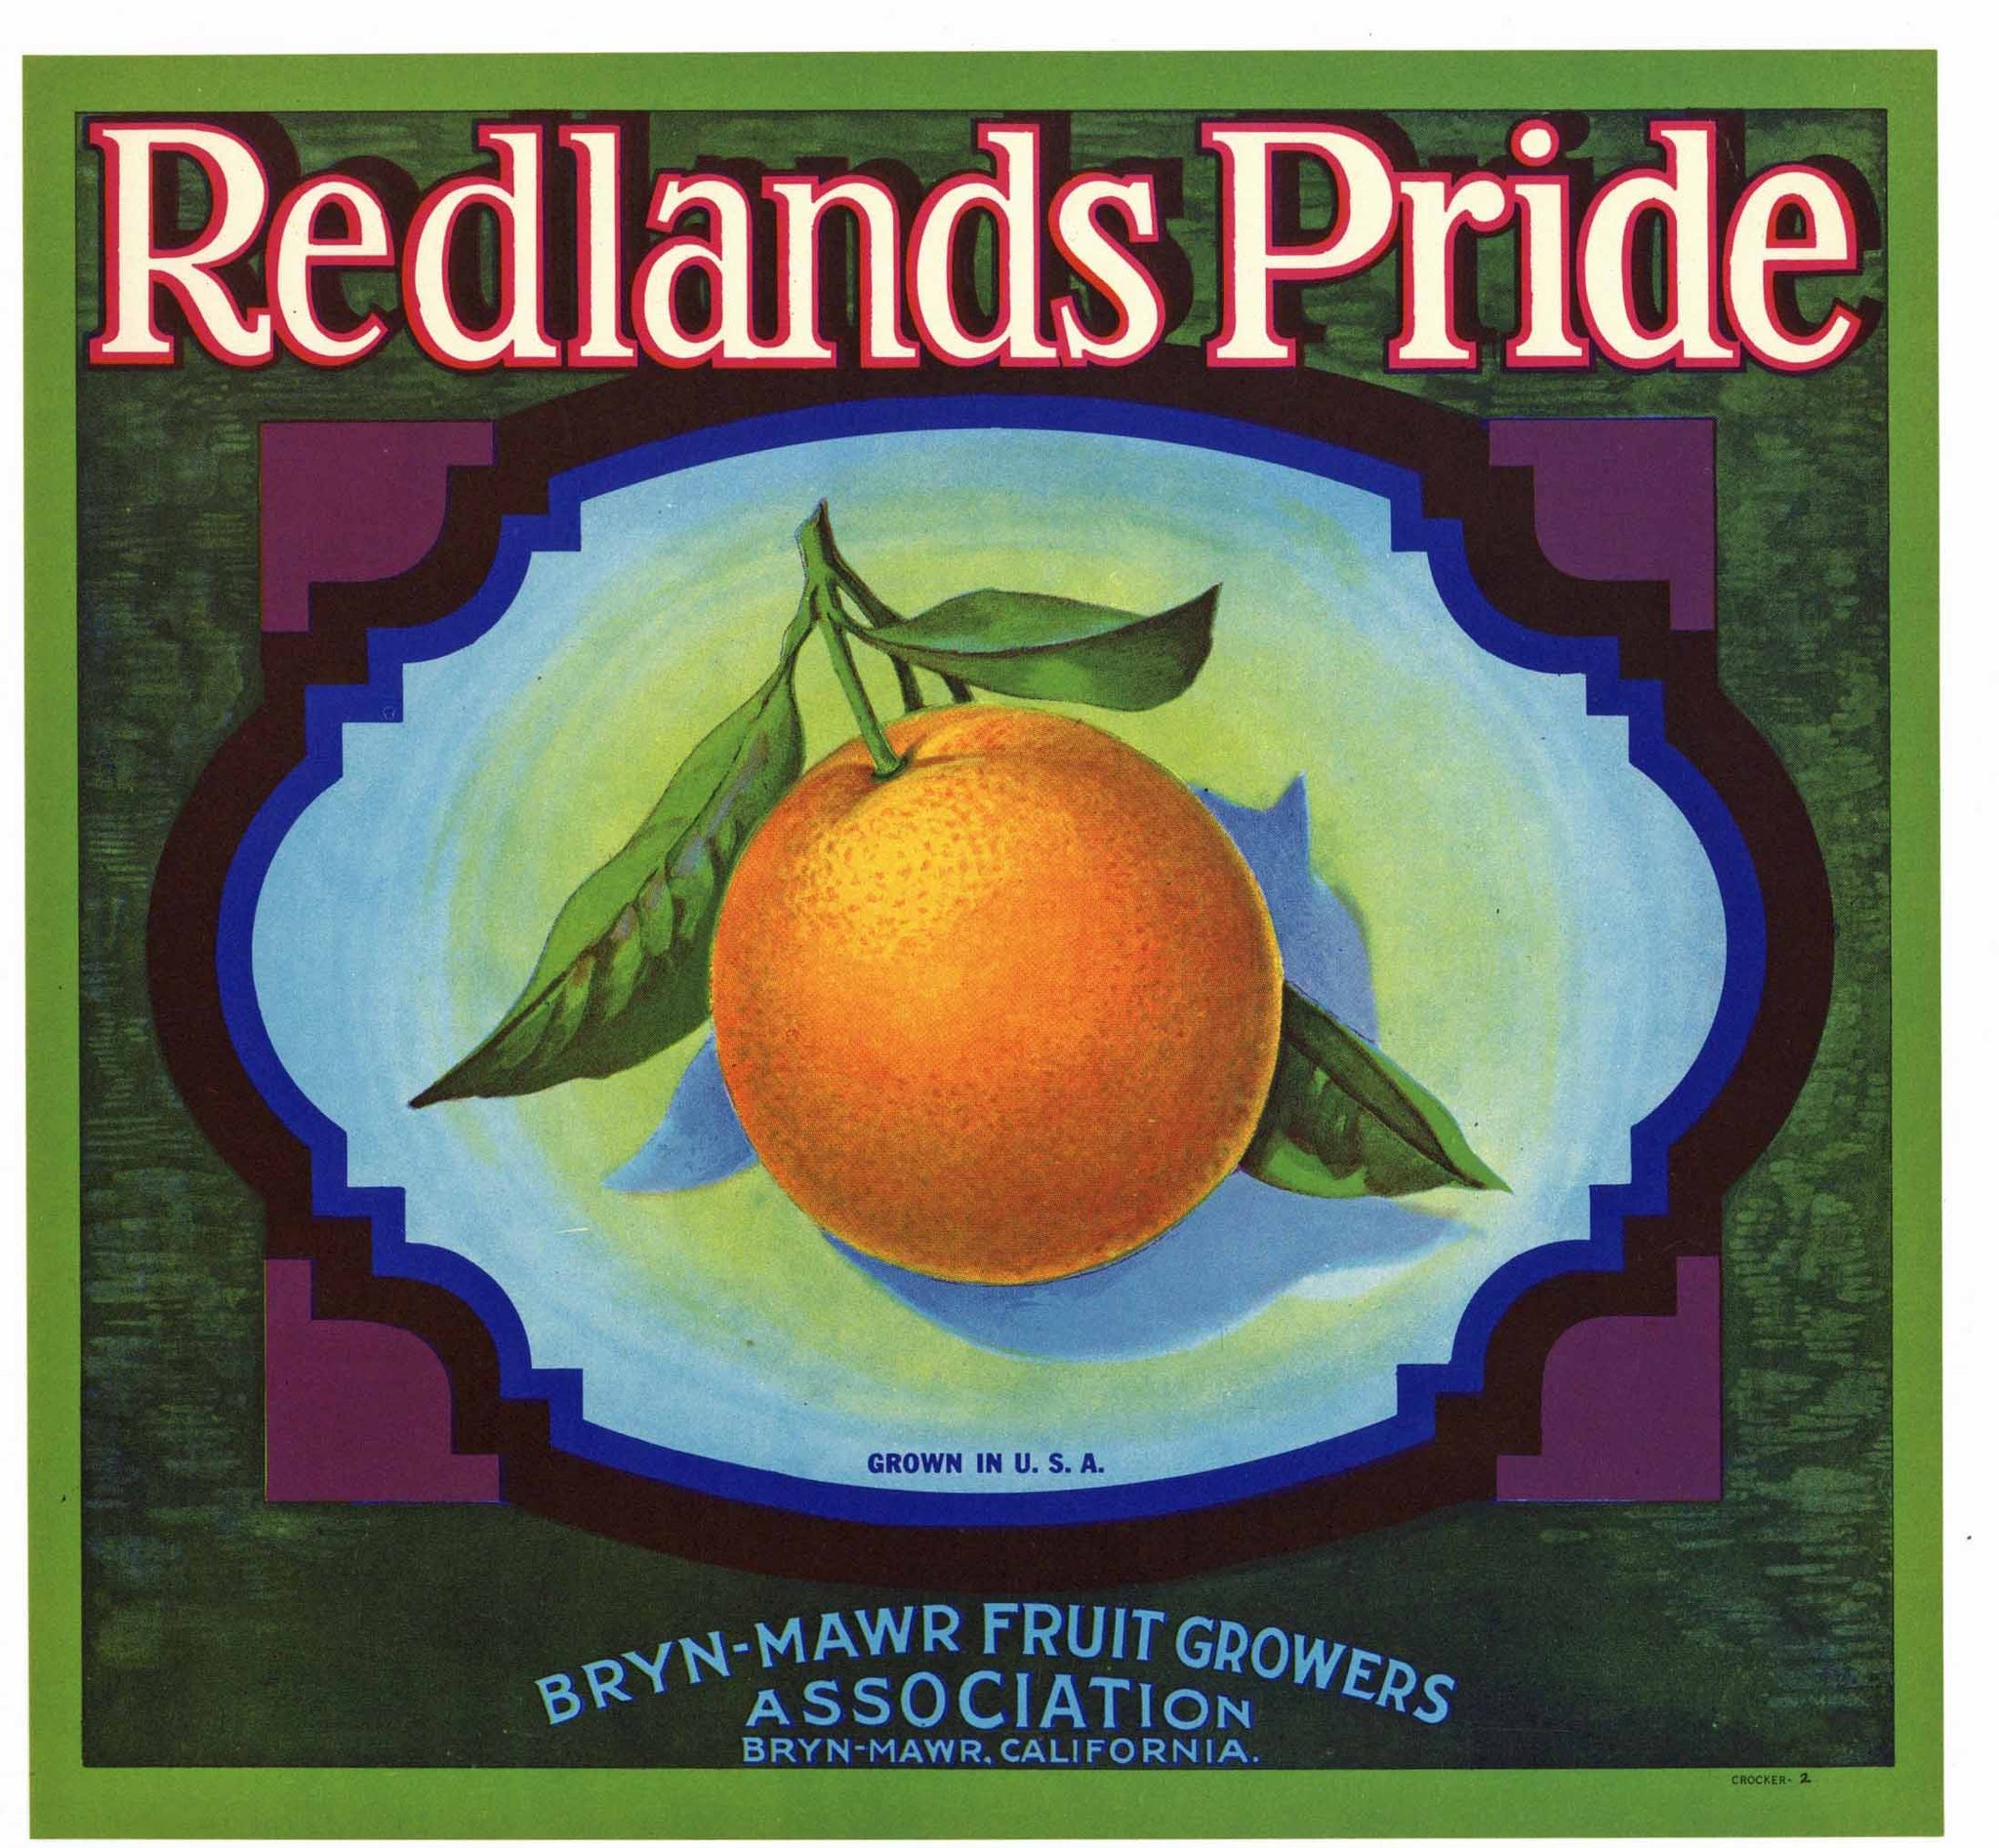 Redlands Pride Brand Vintage Orange Crate Label